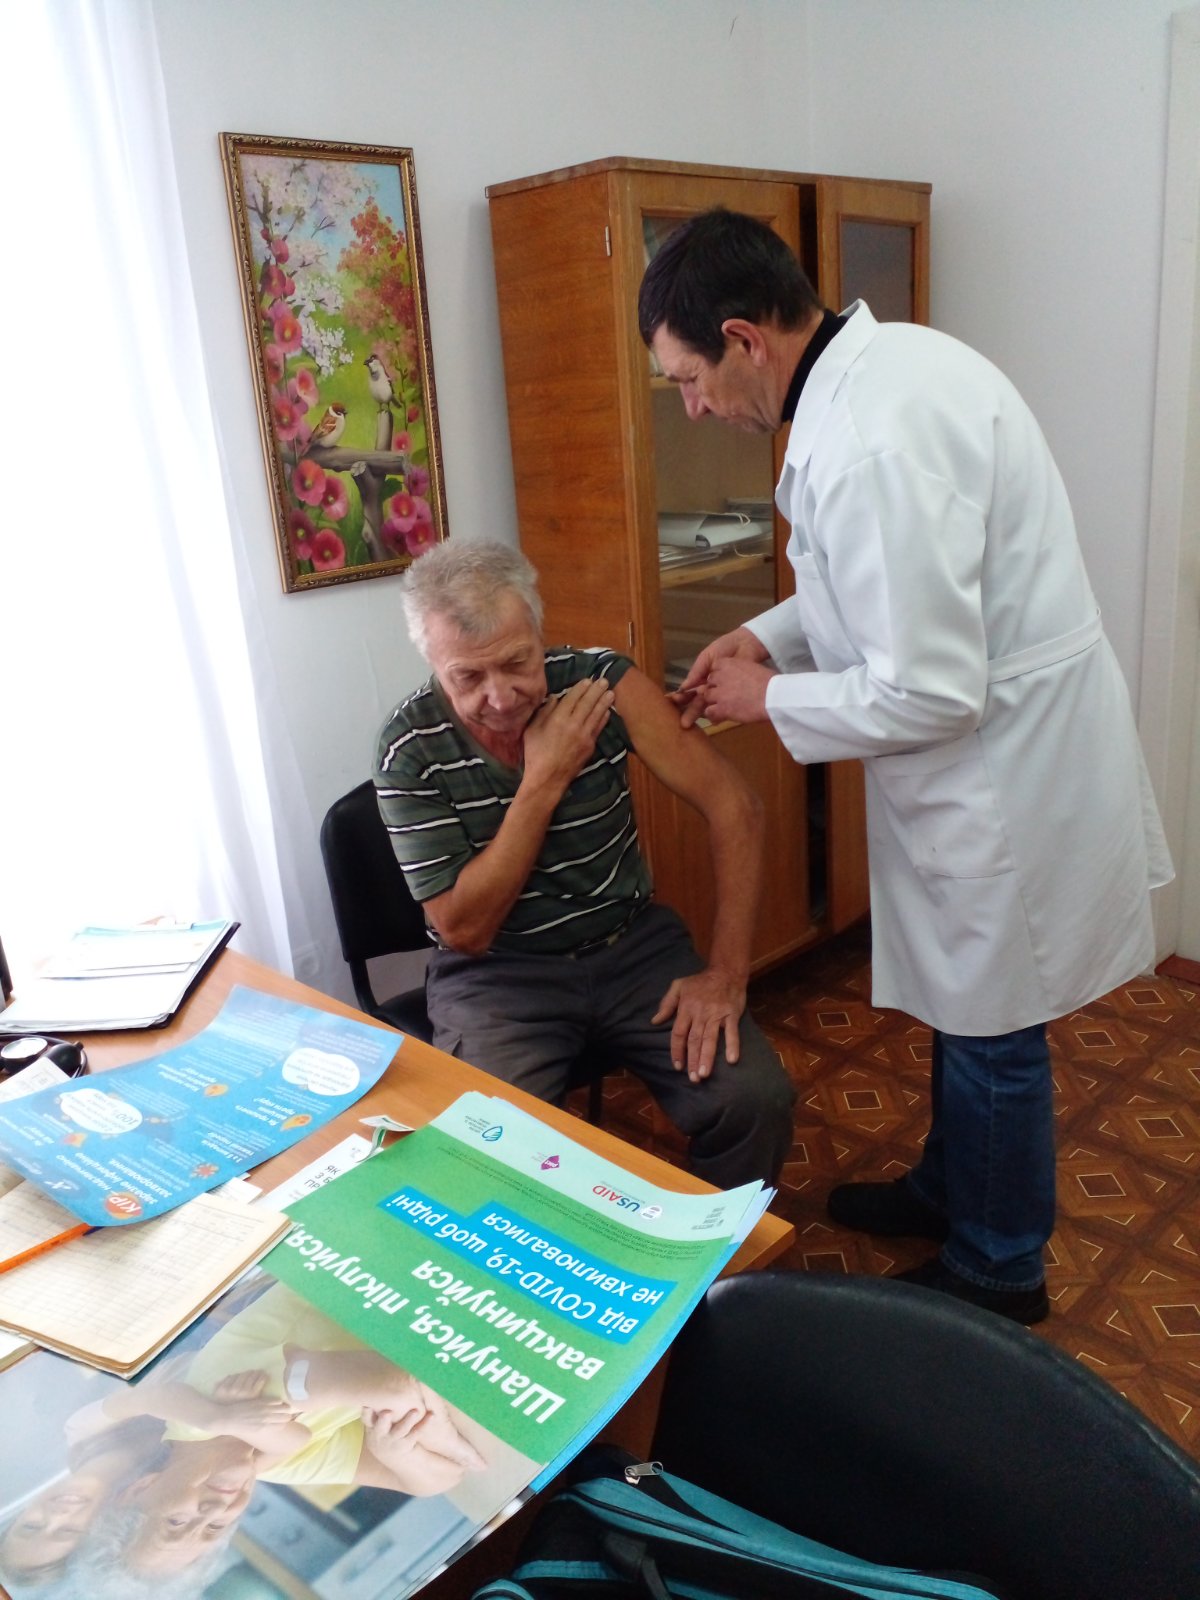 Три райони Бессарабії відвідають обласні вакцинальні бригади: дата та адреса